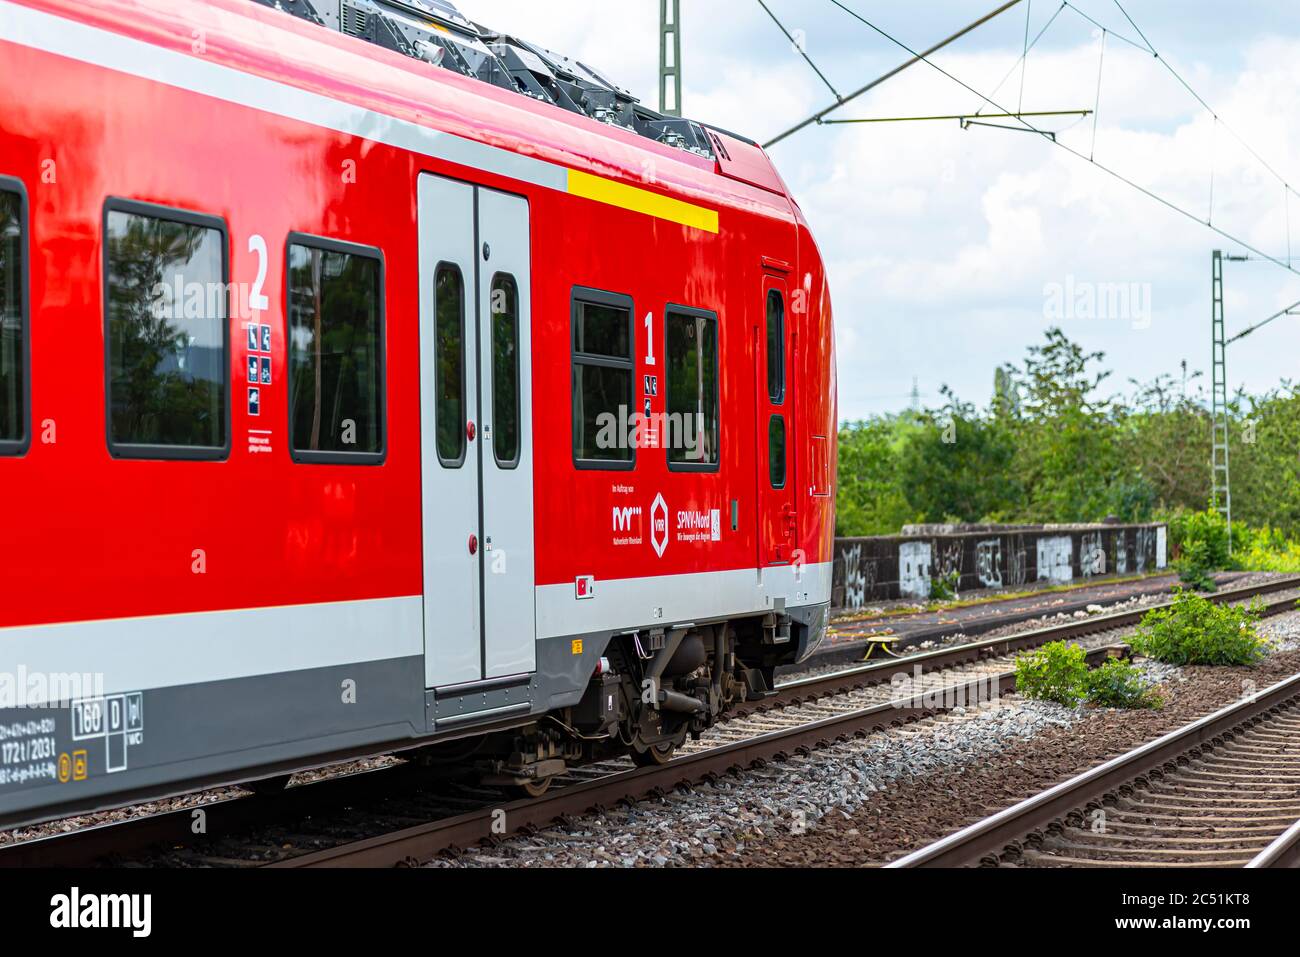 Coblenza Germania, 22 giugno 2020. Un treno elettrico per passeggeri appartenente alla compagnia Deutsche Bahn AG, che arriva ad una piccola stazione ferroviaria di Coblenza i. Foto Stock